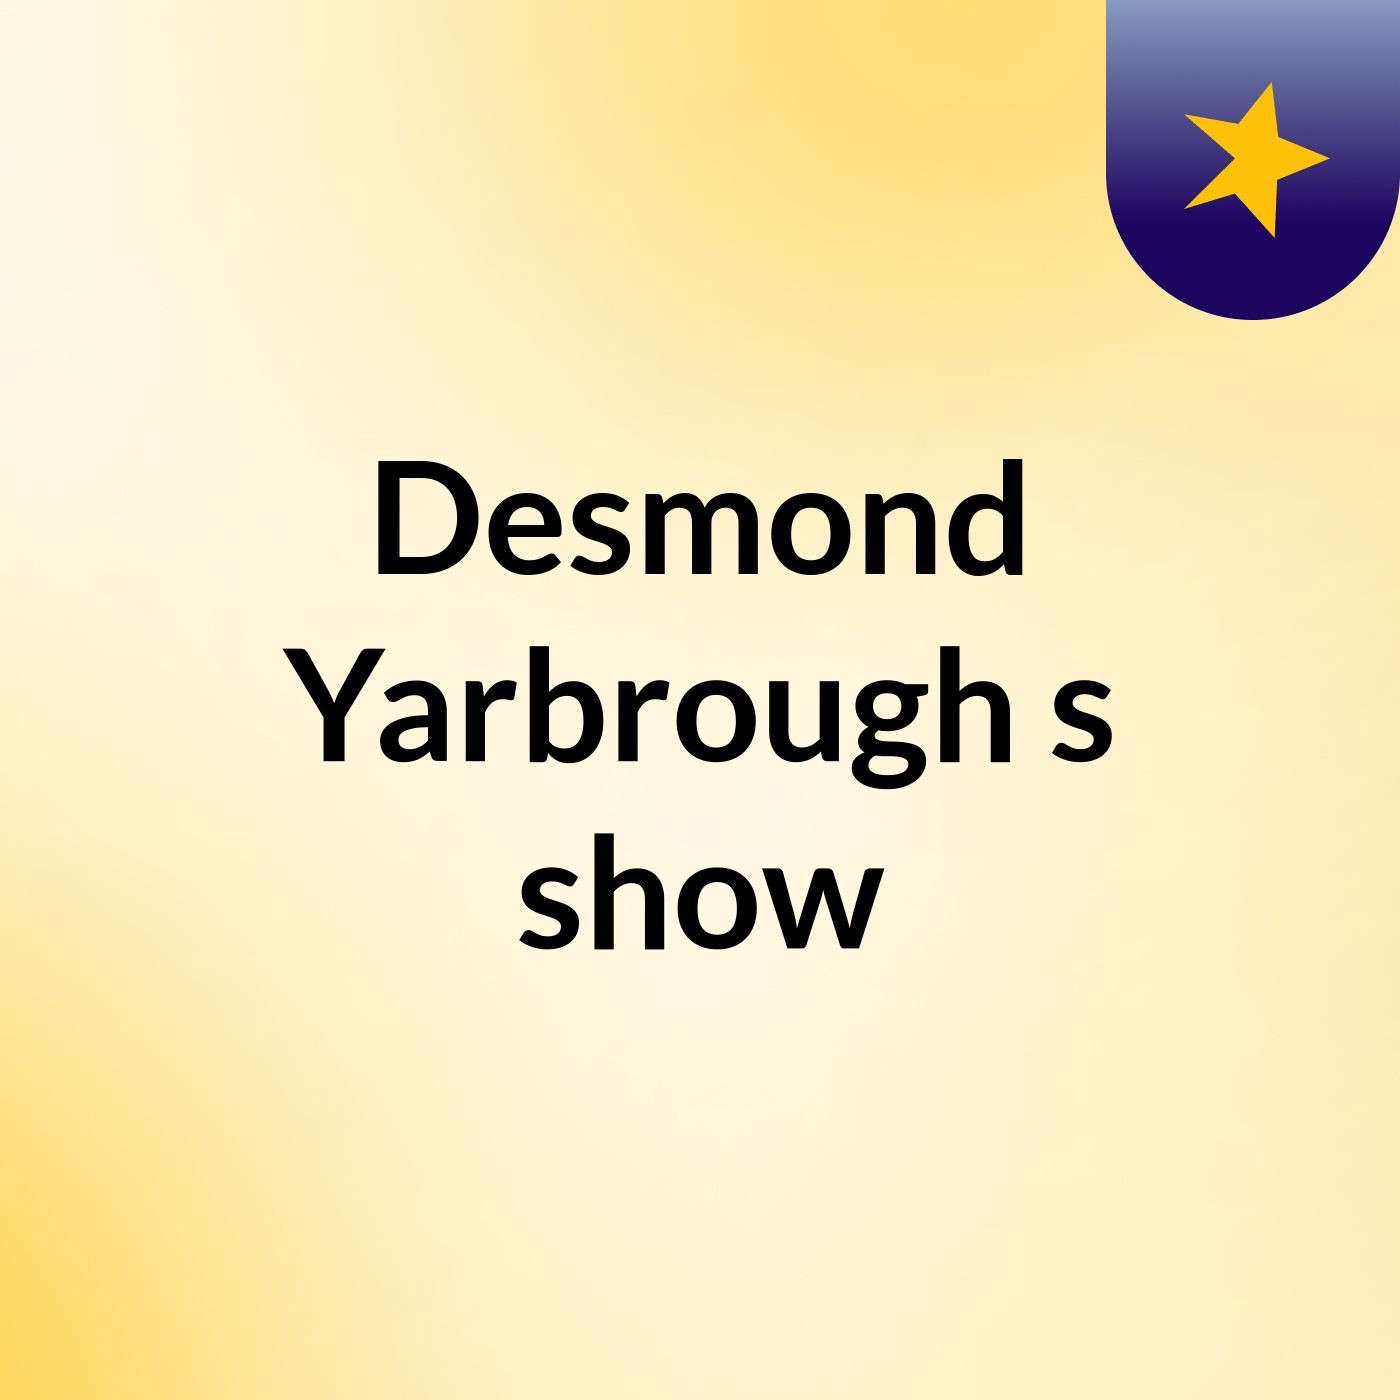 Episode 14 - Desmond Yarbrough's show